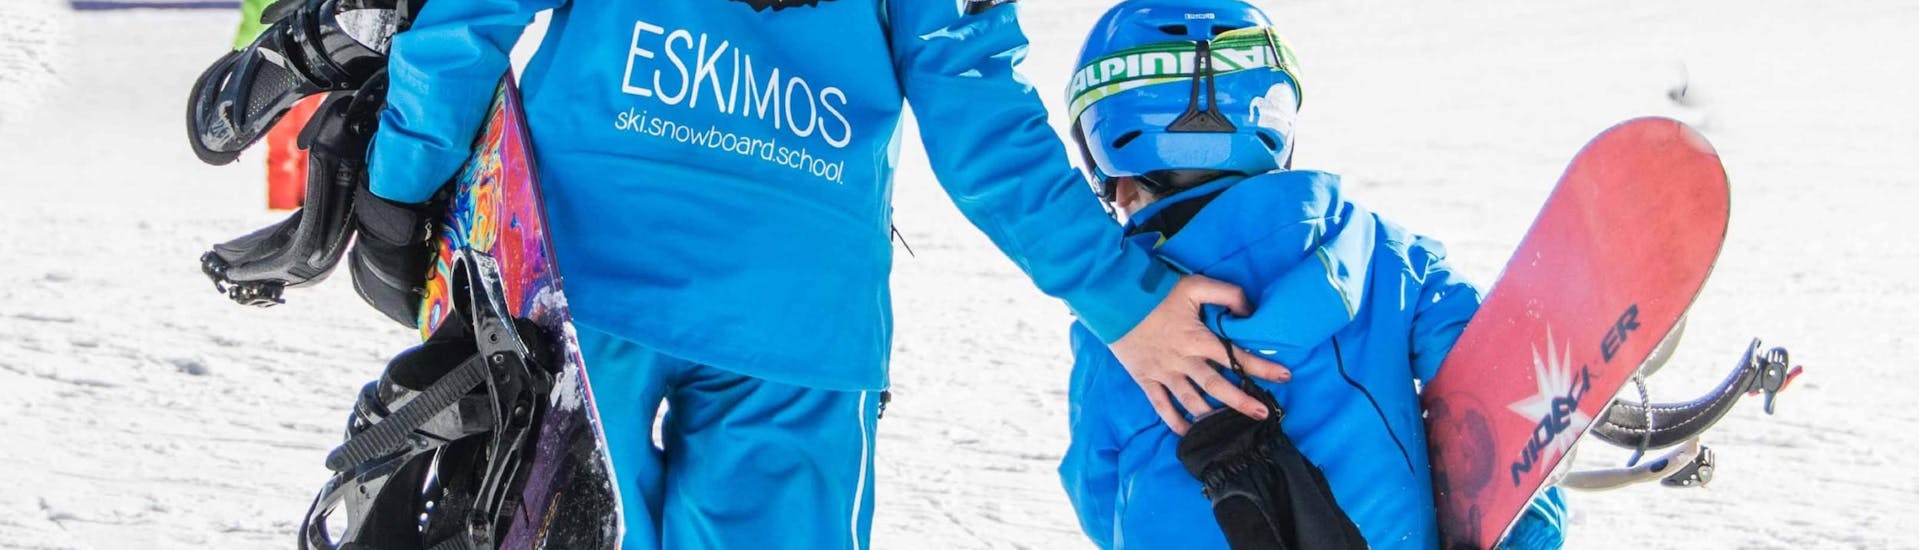 Snowboard Schnupperkurs für Kinder (ab 6 J.) für totale Anfänger mit Skischule ESKIMOS Saas-Fee.